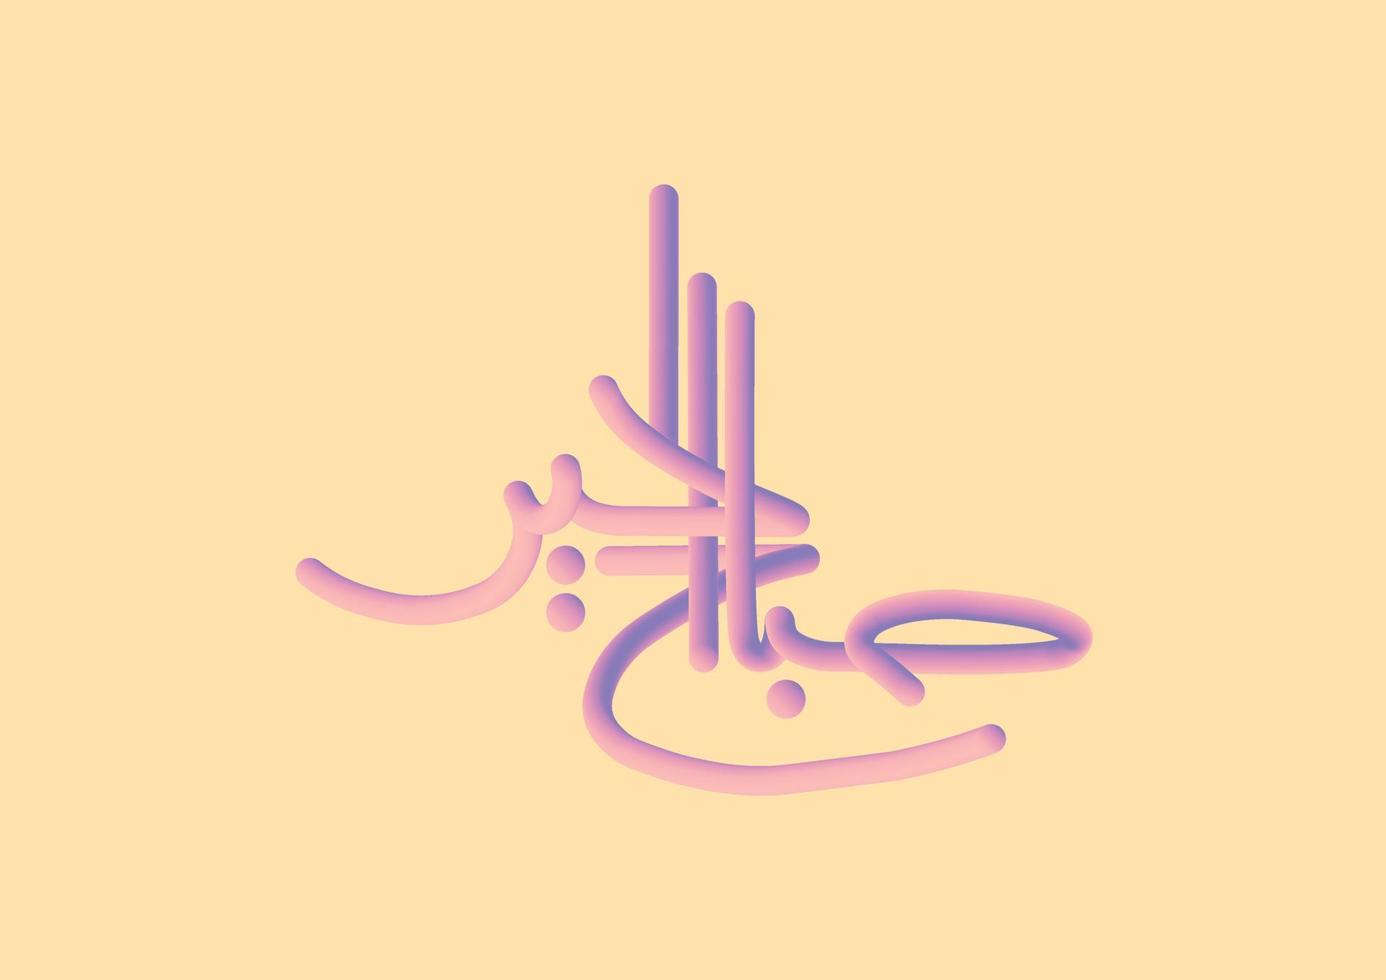 inspirerend Arabisch groeten middelen in Engels mooi zo ochtend. 3d vector typografie poster ontwerp met oranje achtergrond.